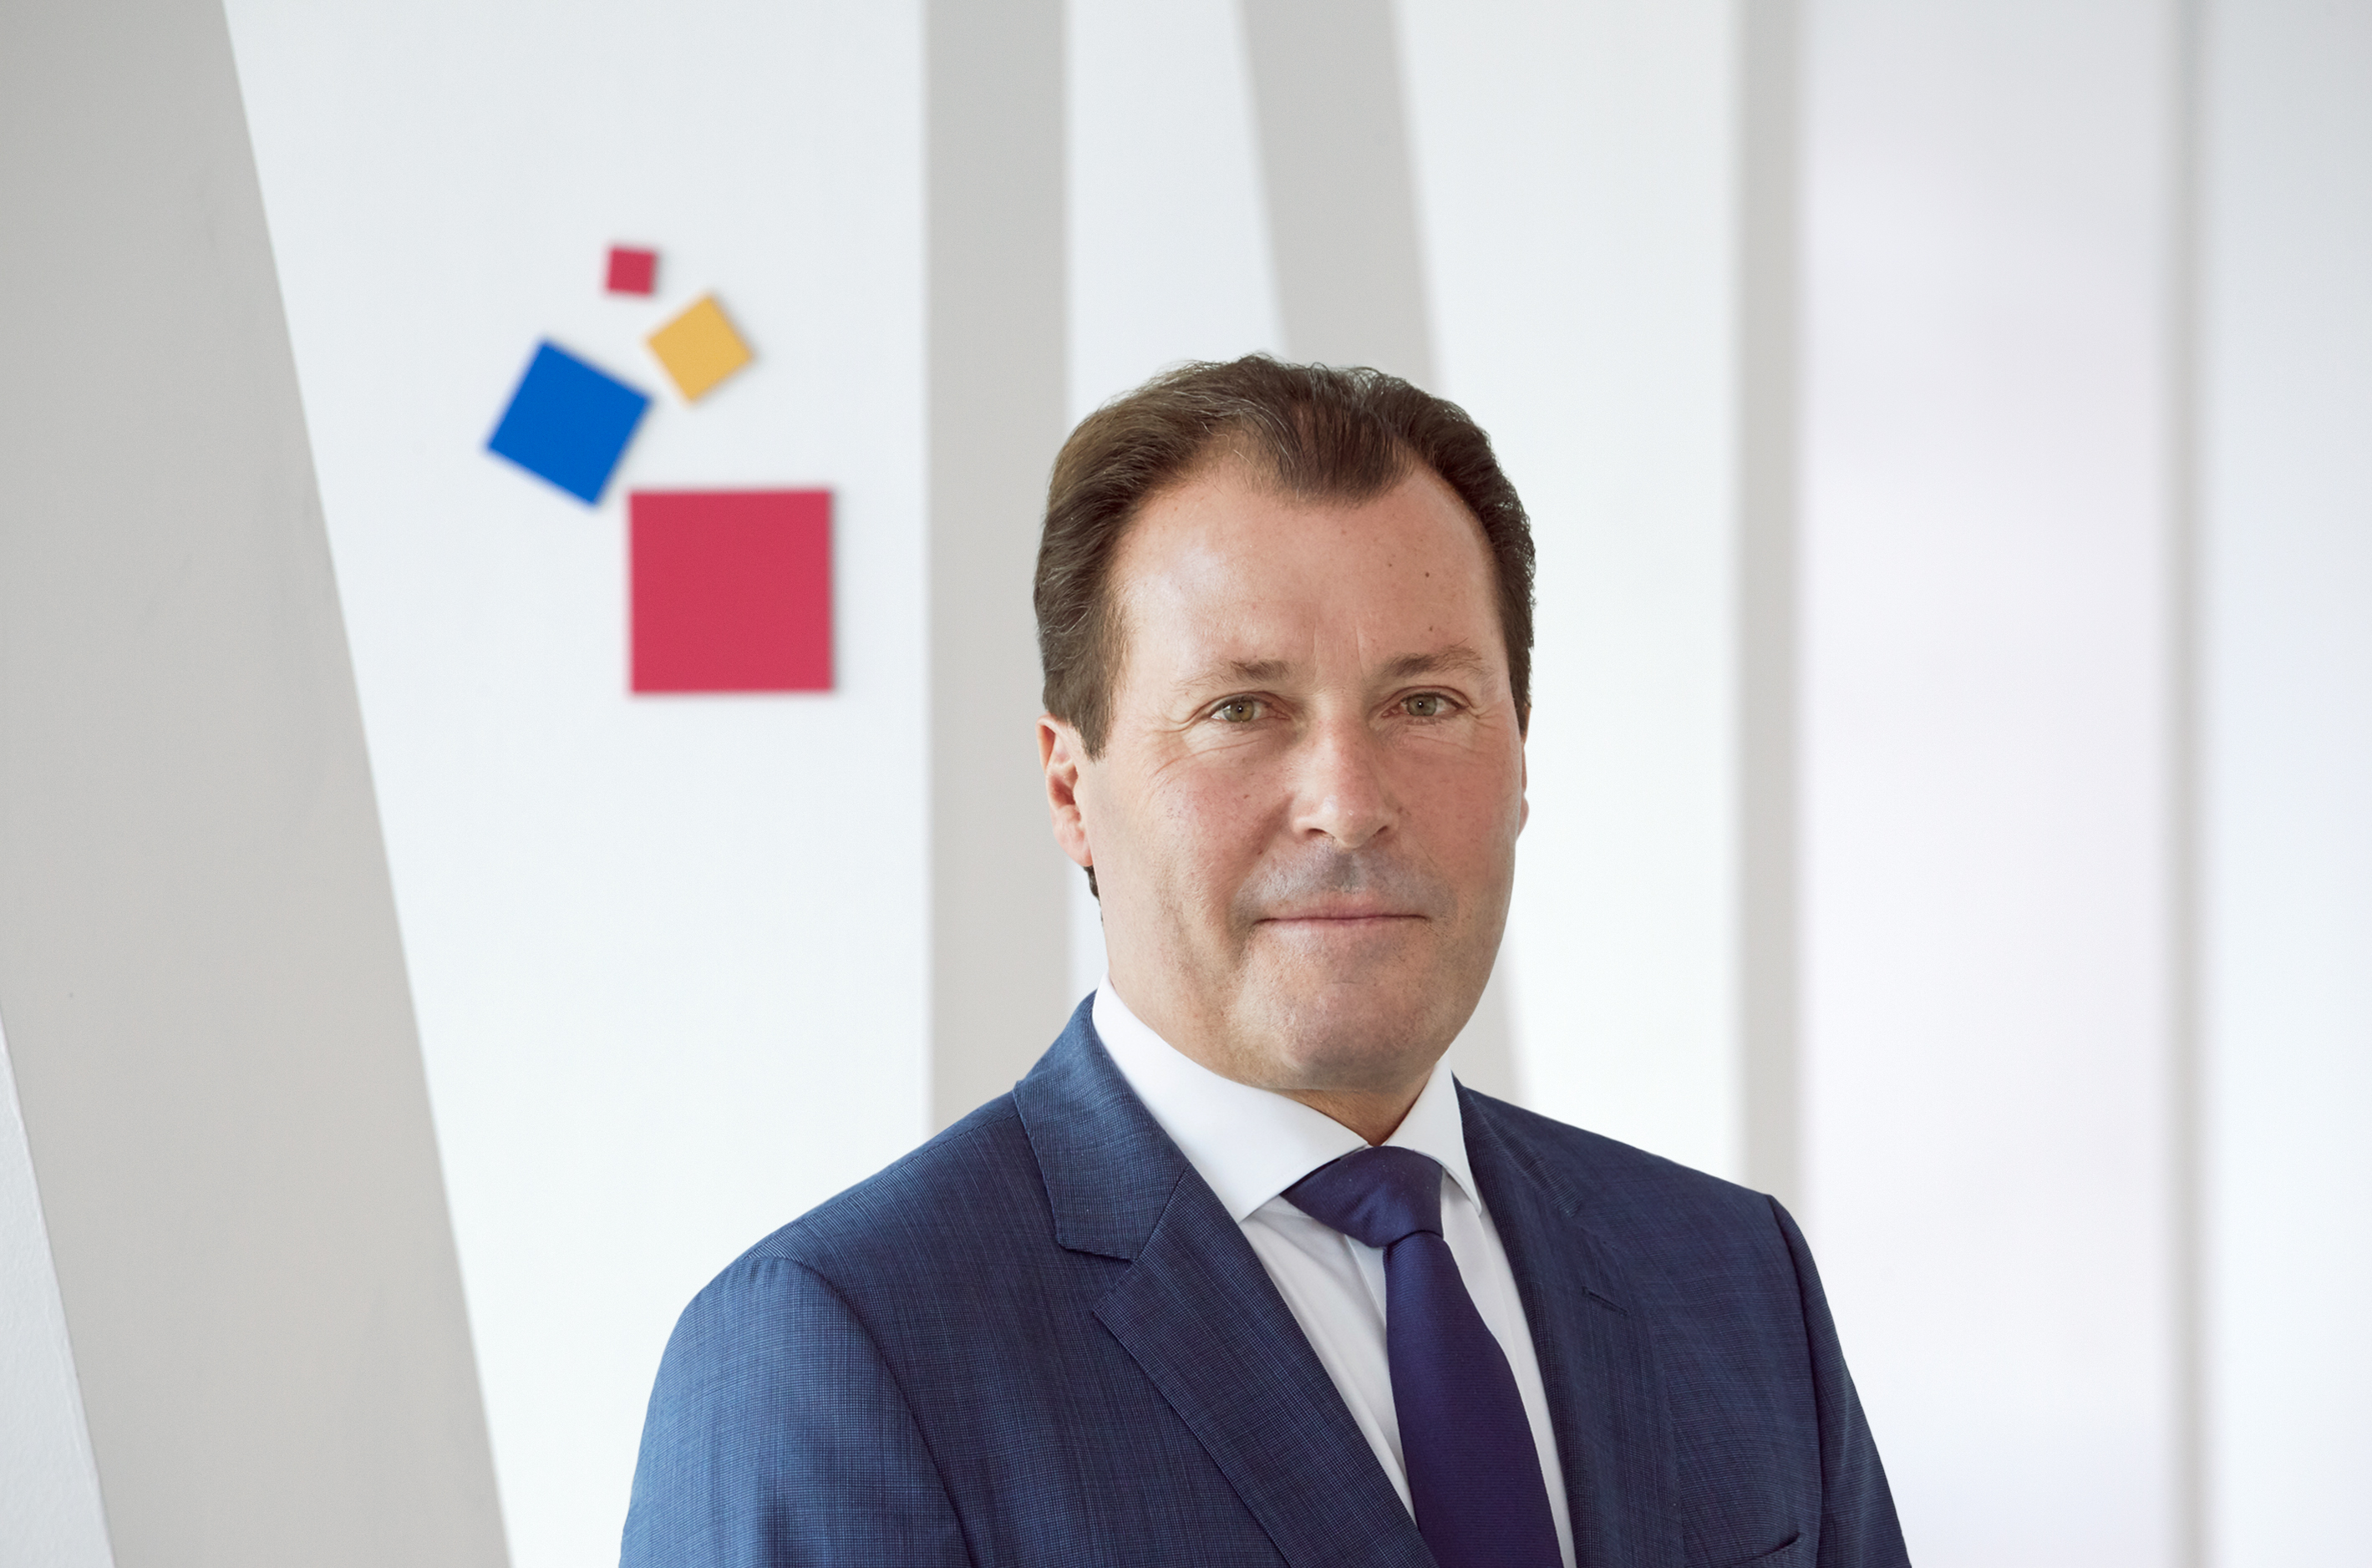 Wolfgang Marzin, Vorsitzender der Geschäftsführung der Messe Frankfurt GmbH